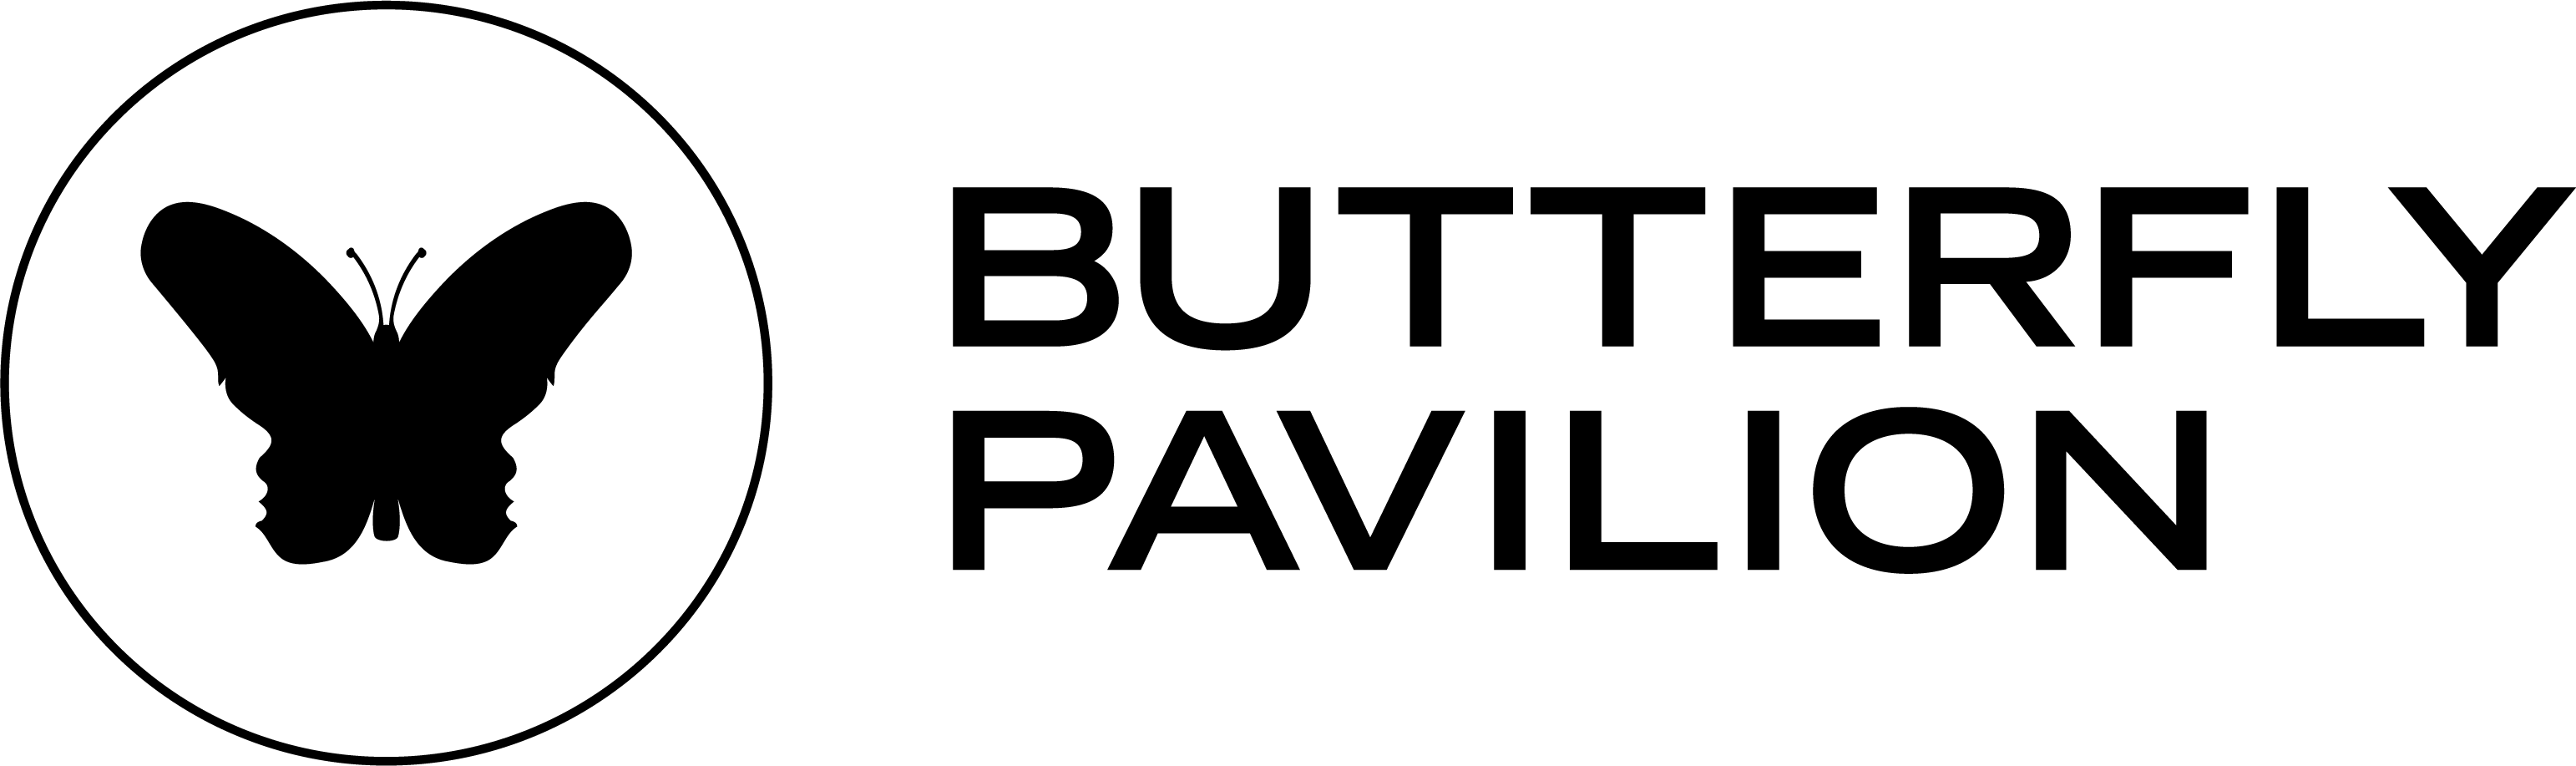 Content provider's logo